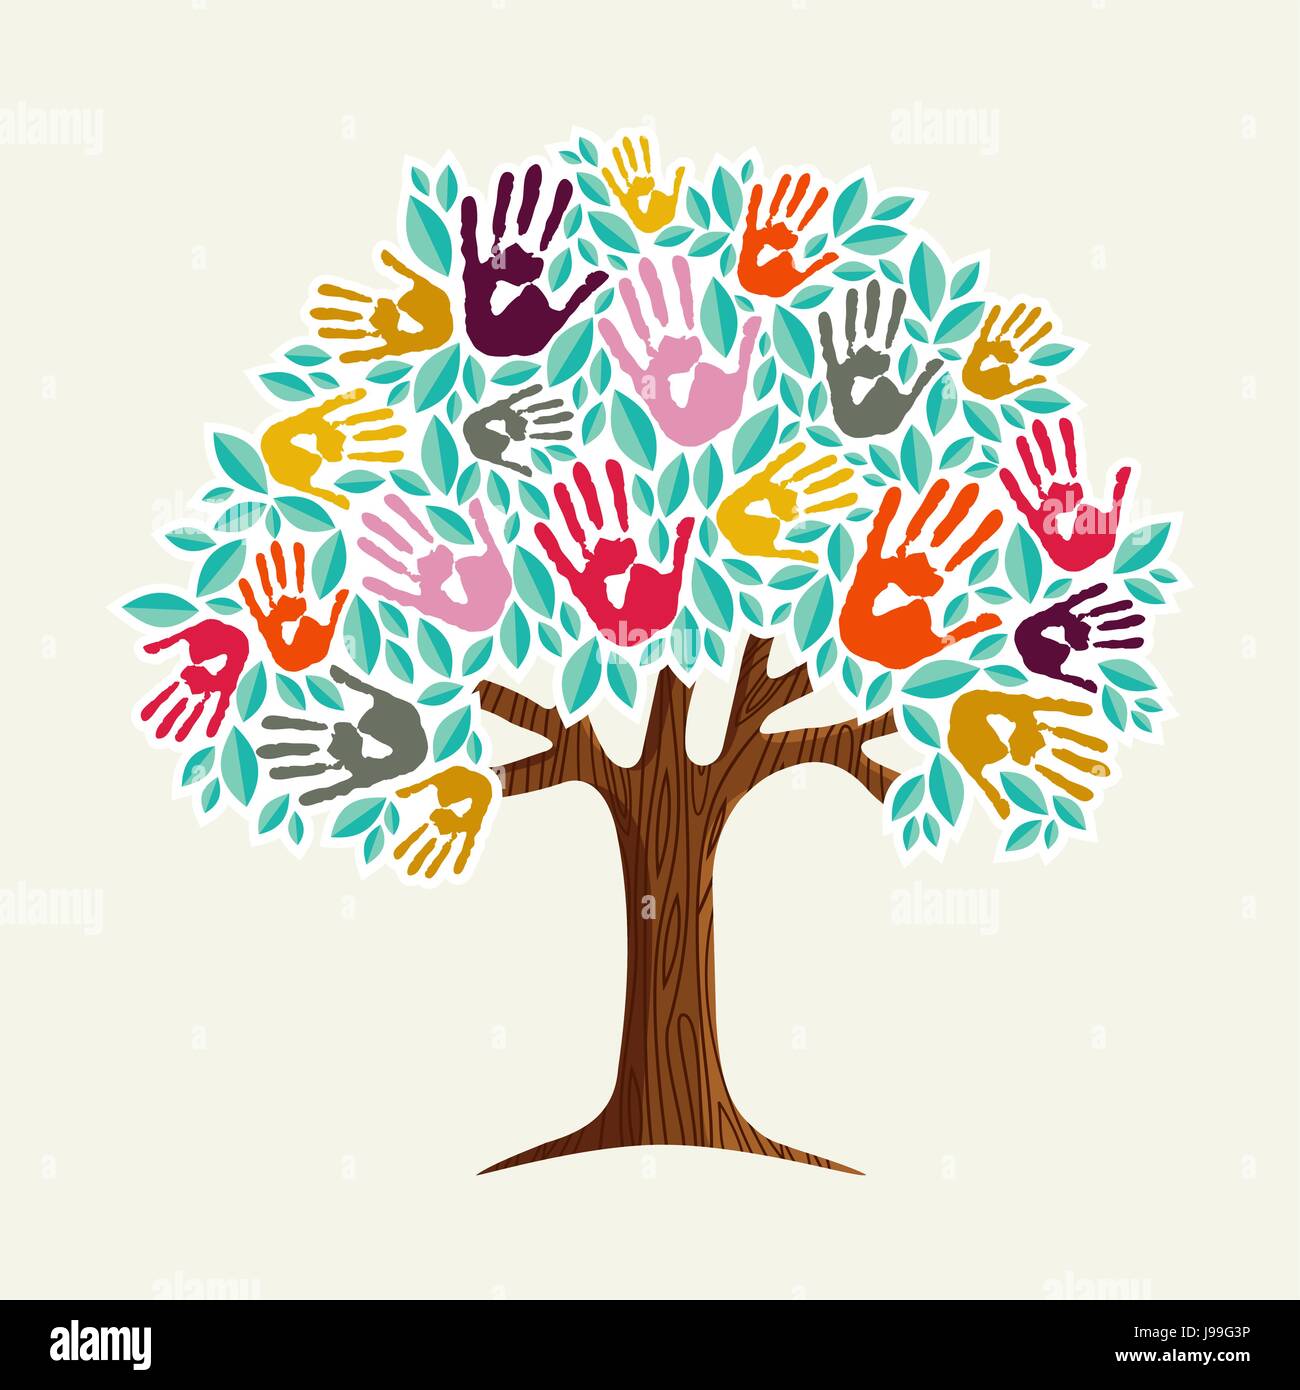 Eine helfende Hand: Baum aus unterschiedlichen Handabdrücke Form. Gemeinschaft Hilfe Konzept Abbildung. EPS10 Vektor. Stock Vektor